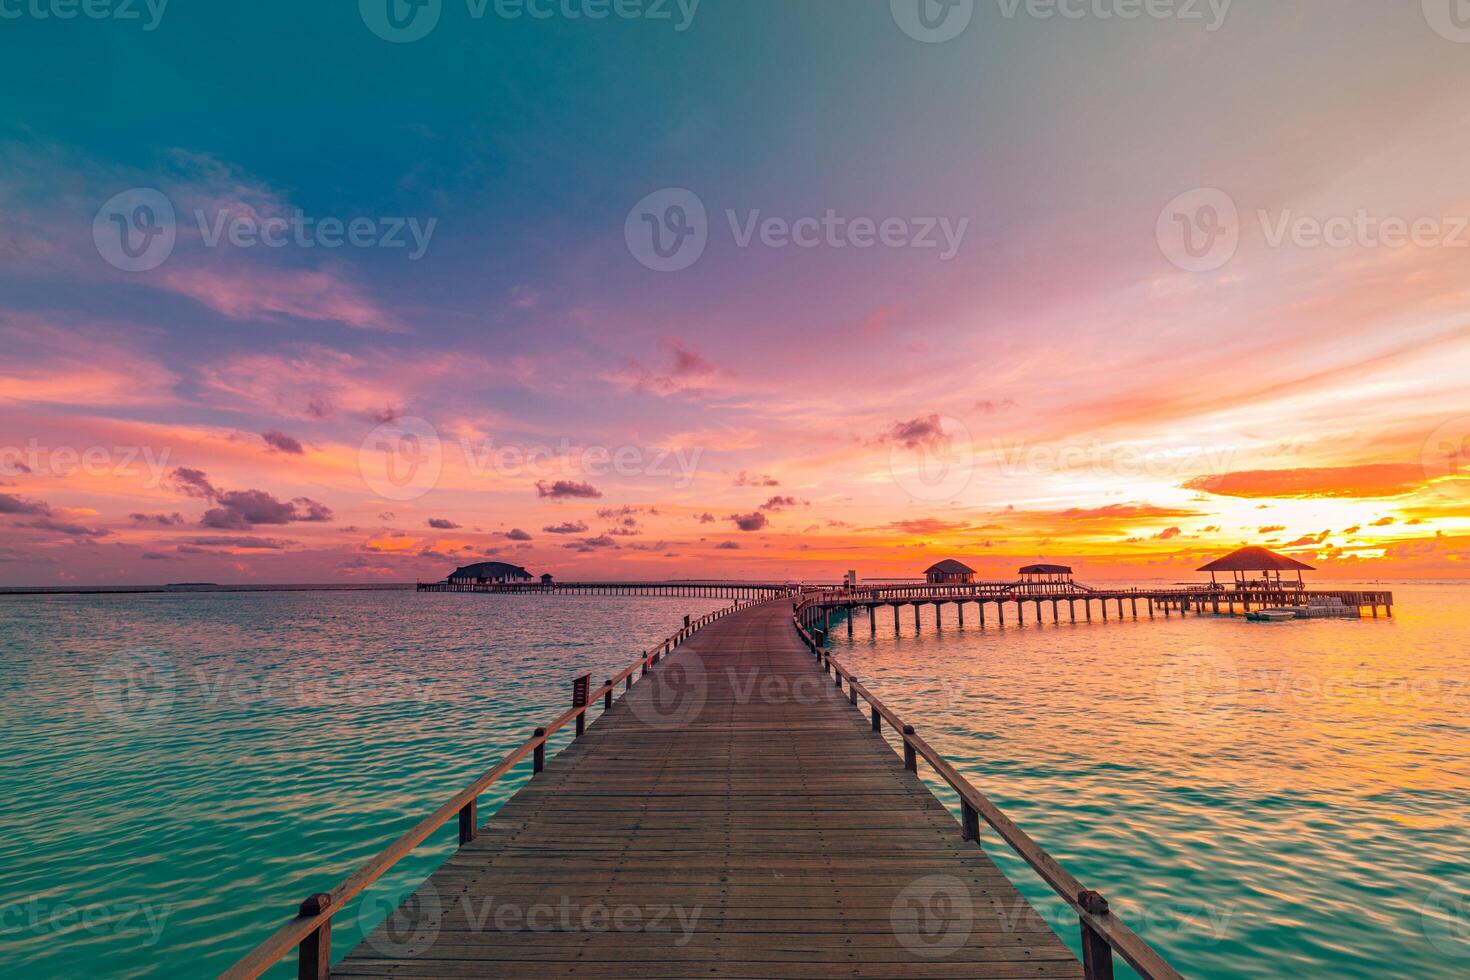 surpreendente pôr do sol panorama Maldivas. luxo recorrer vilas cais caminho marinha suave conduziu luzes debaixo colorida céu. lindo crepúsculo céu fantástico nuvens. majestoso de praia fundo melhor período de férias feriado foto